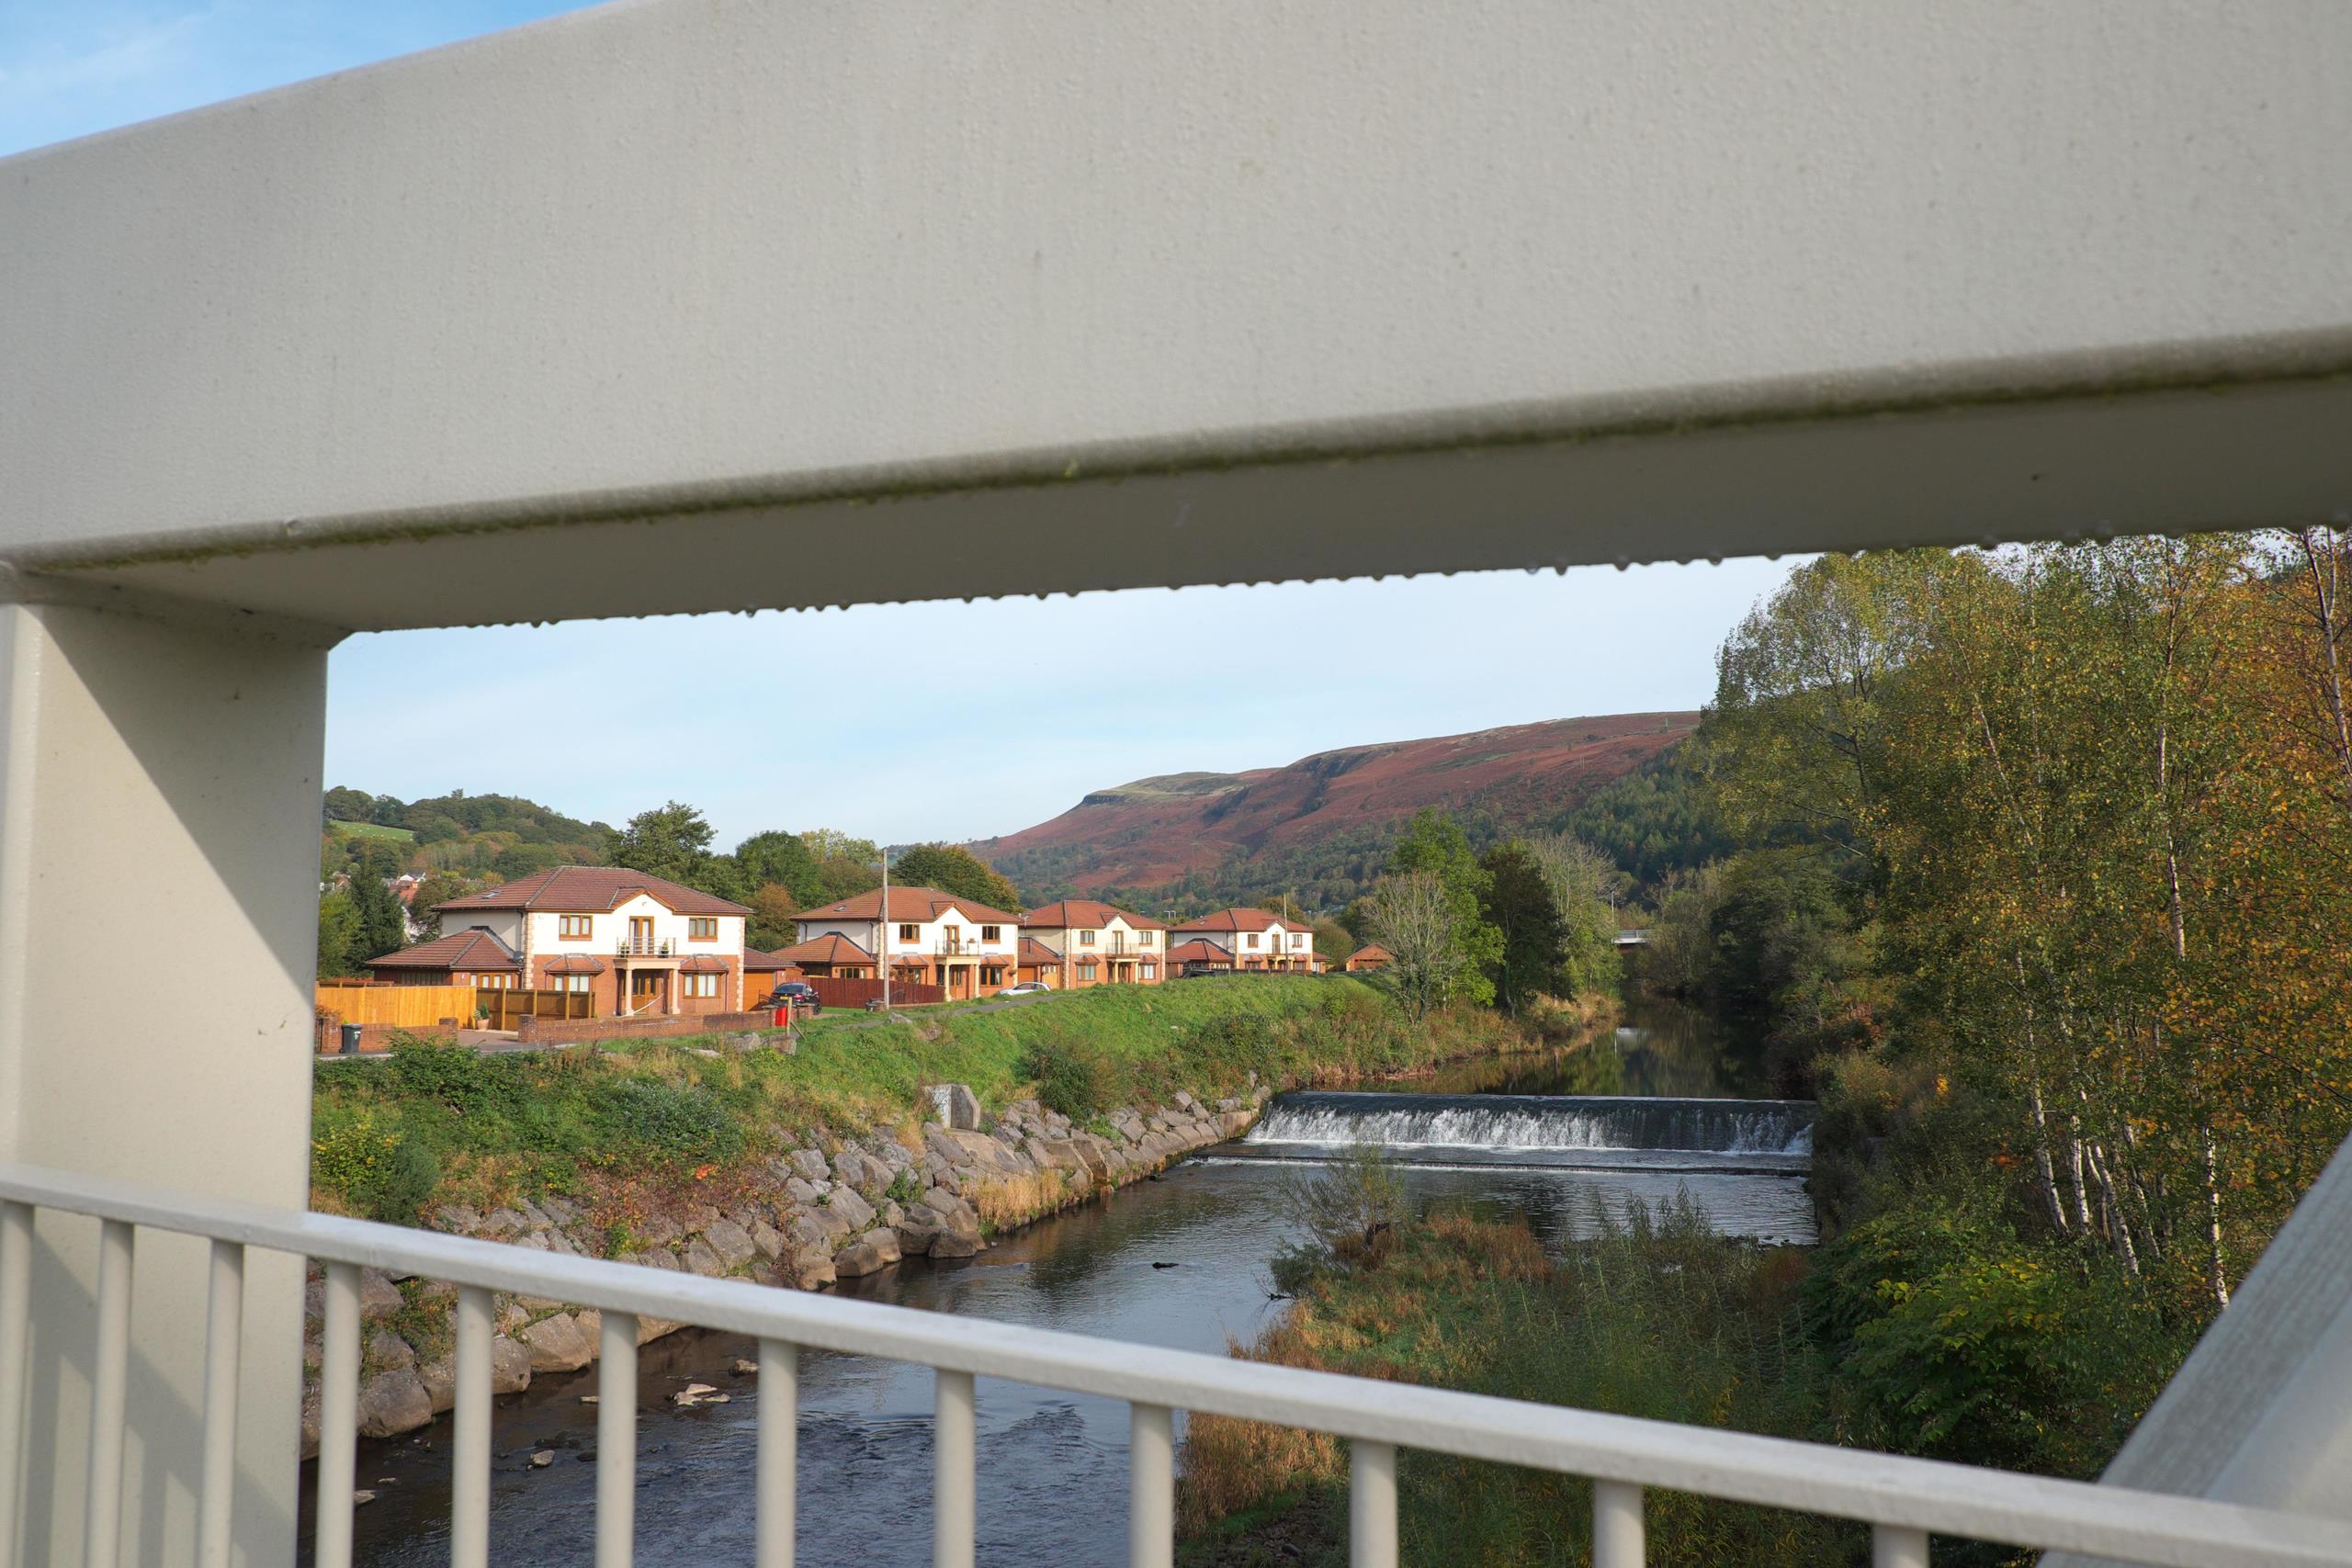 Modern detached houses beside the River Taff in Aberfan, Wales